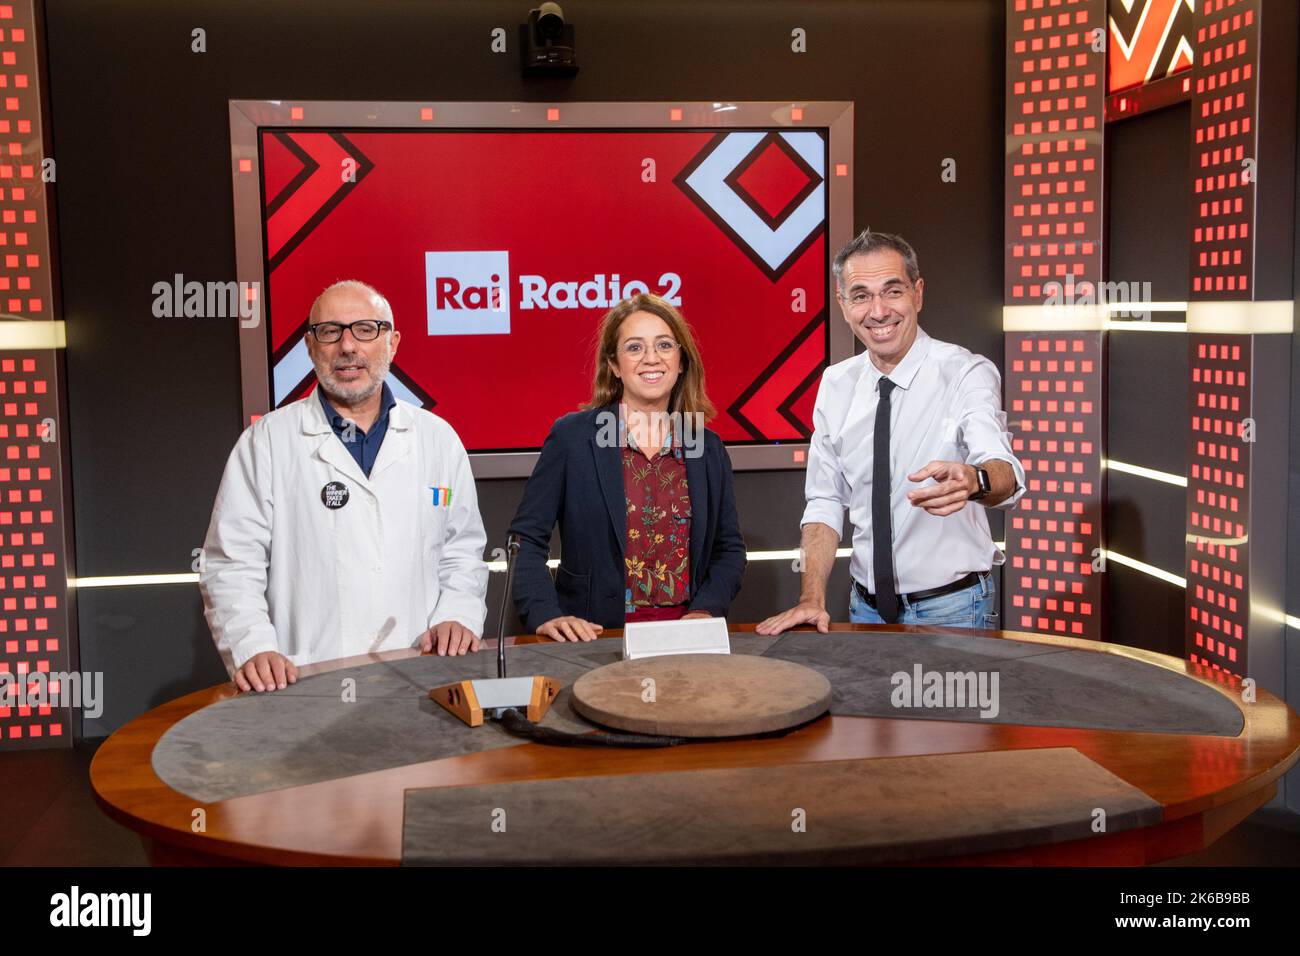 La radio italiana acoge a Claudia de Lillo, Filippo Solibello y Marco  Ardemagni con motivo de la presentación en la rueda de prensa de la RAI Radio  2 del programa de radio